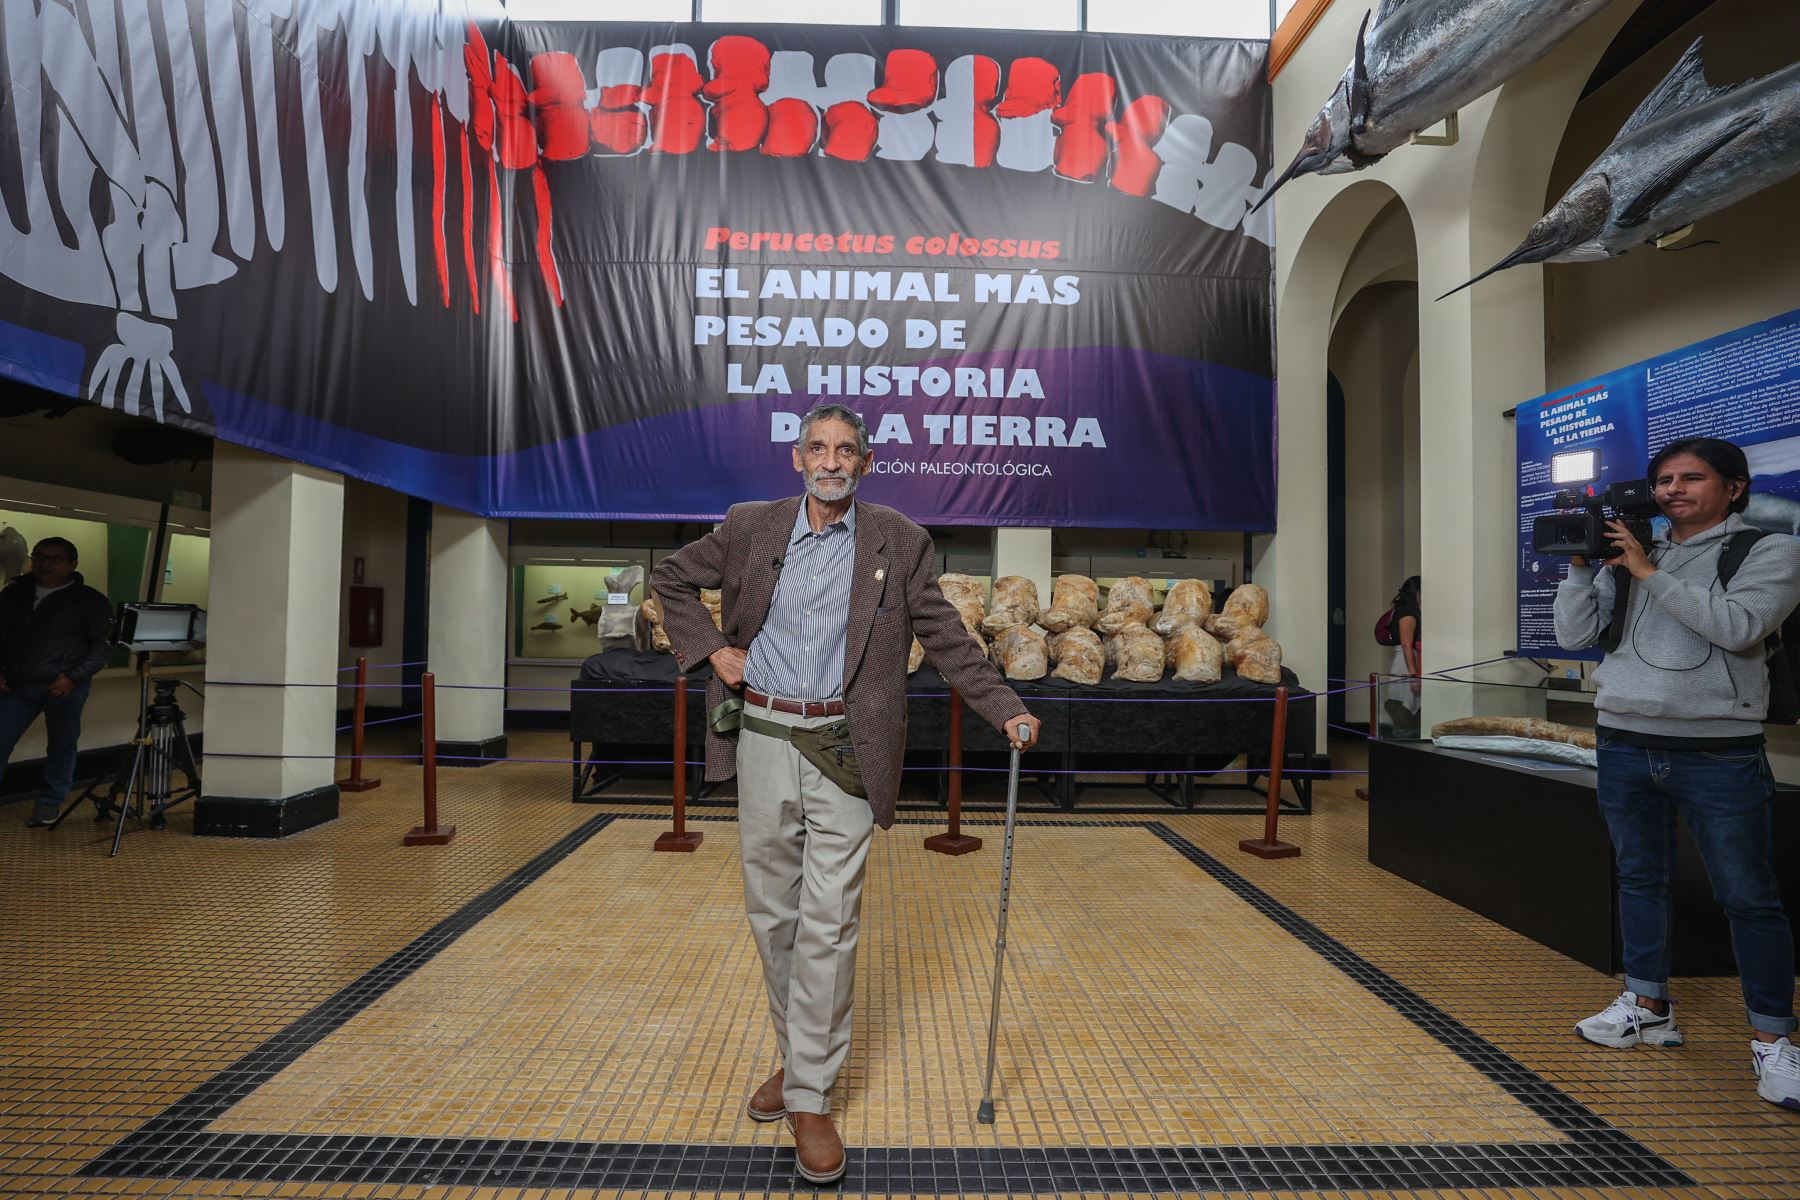 Urbina invitó a las familias que vengan con sus hijos a ver los restos del Perucetus colossus en el Museo de Historia Natural de la Universidad San Marcos. Foto: ANDINA/Andrés Valle